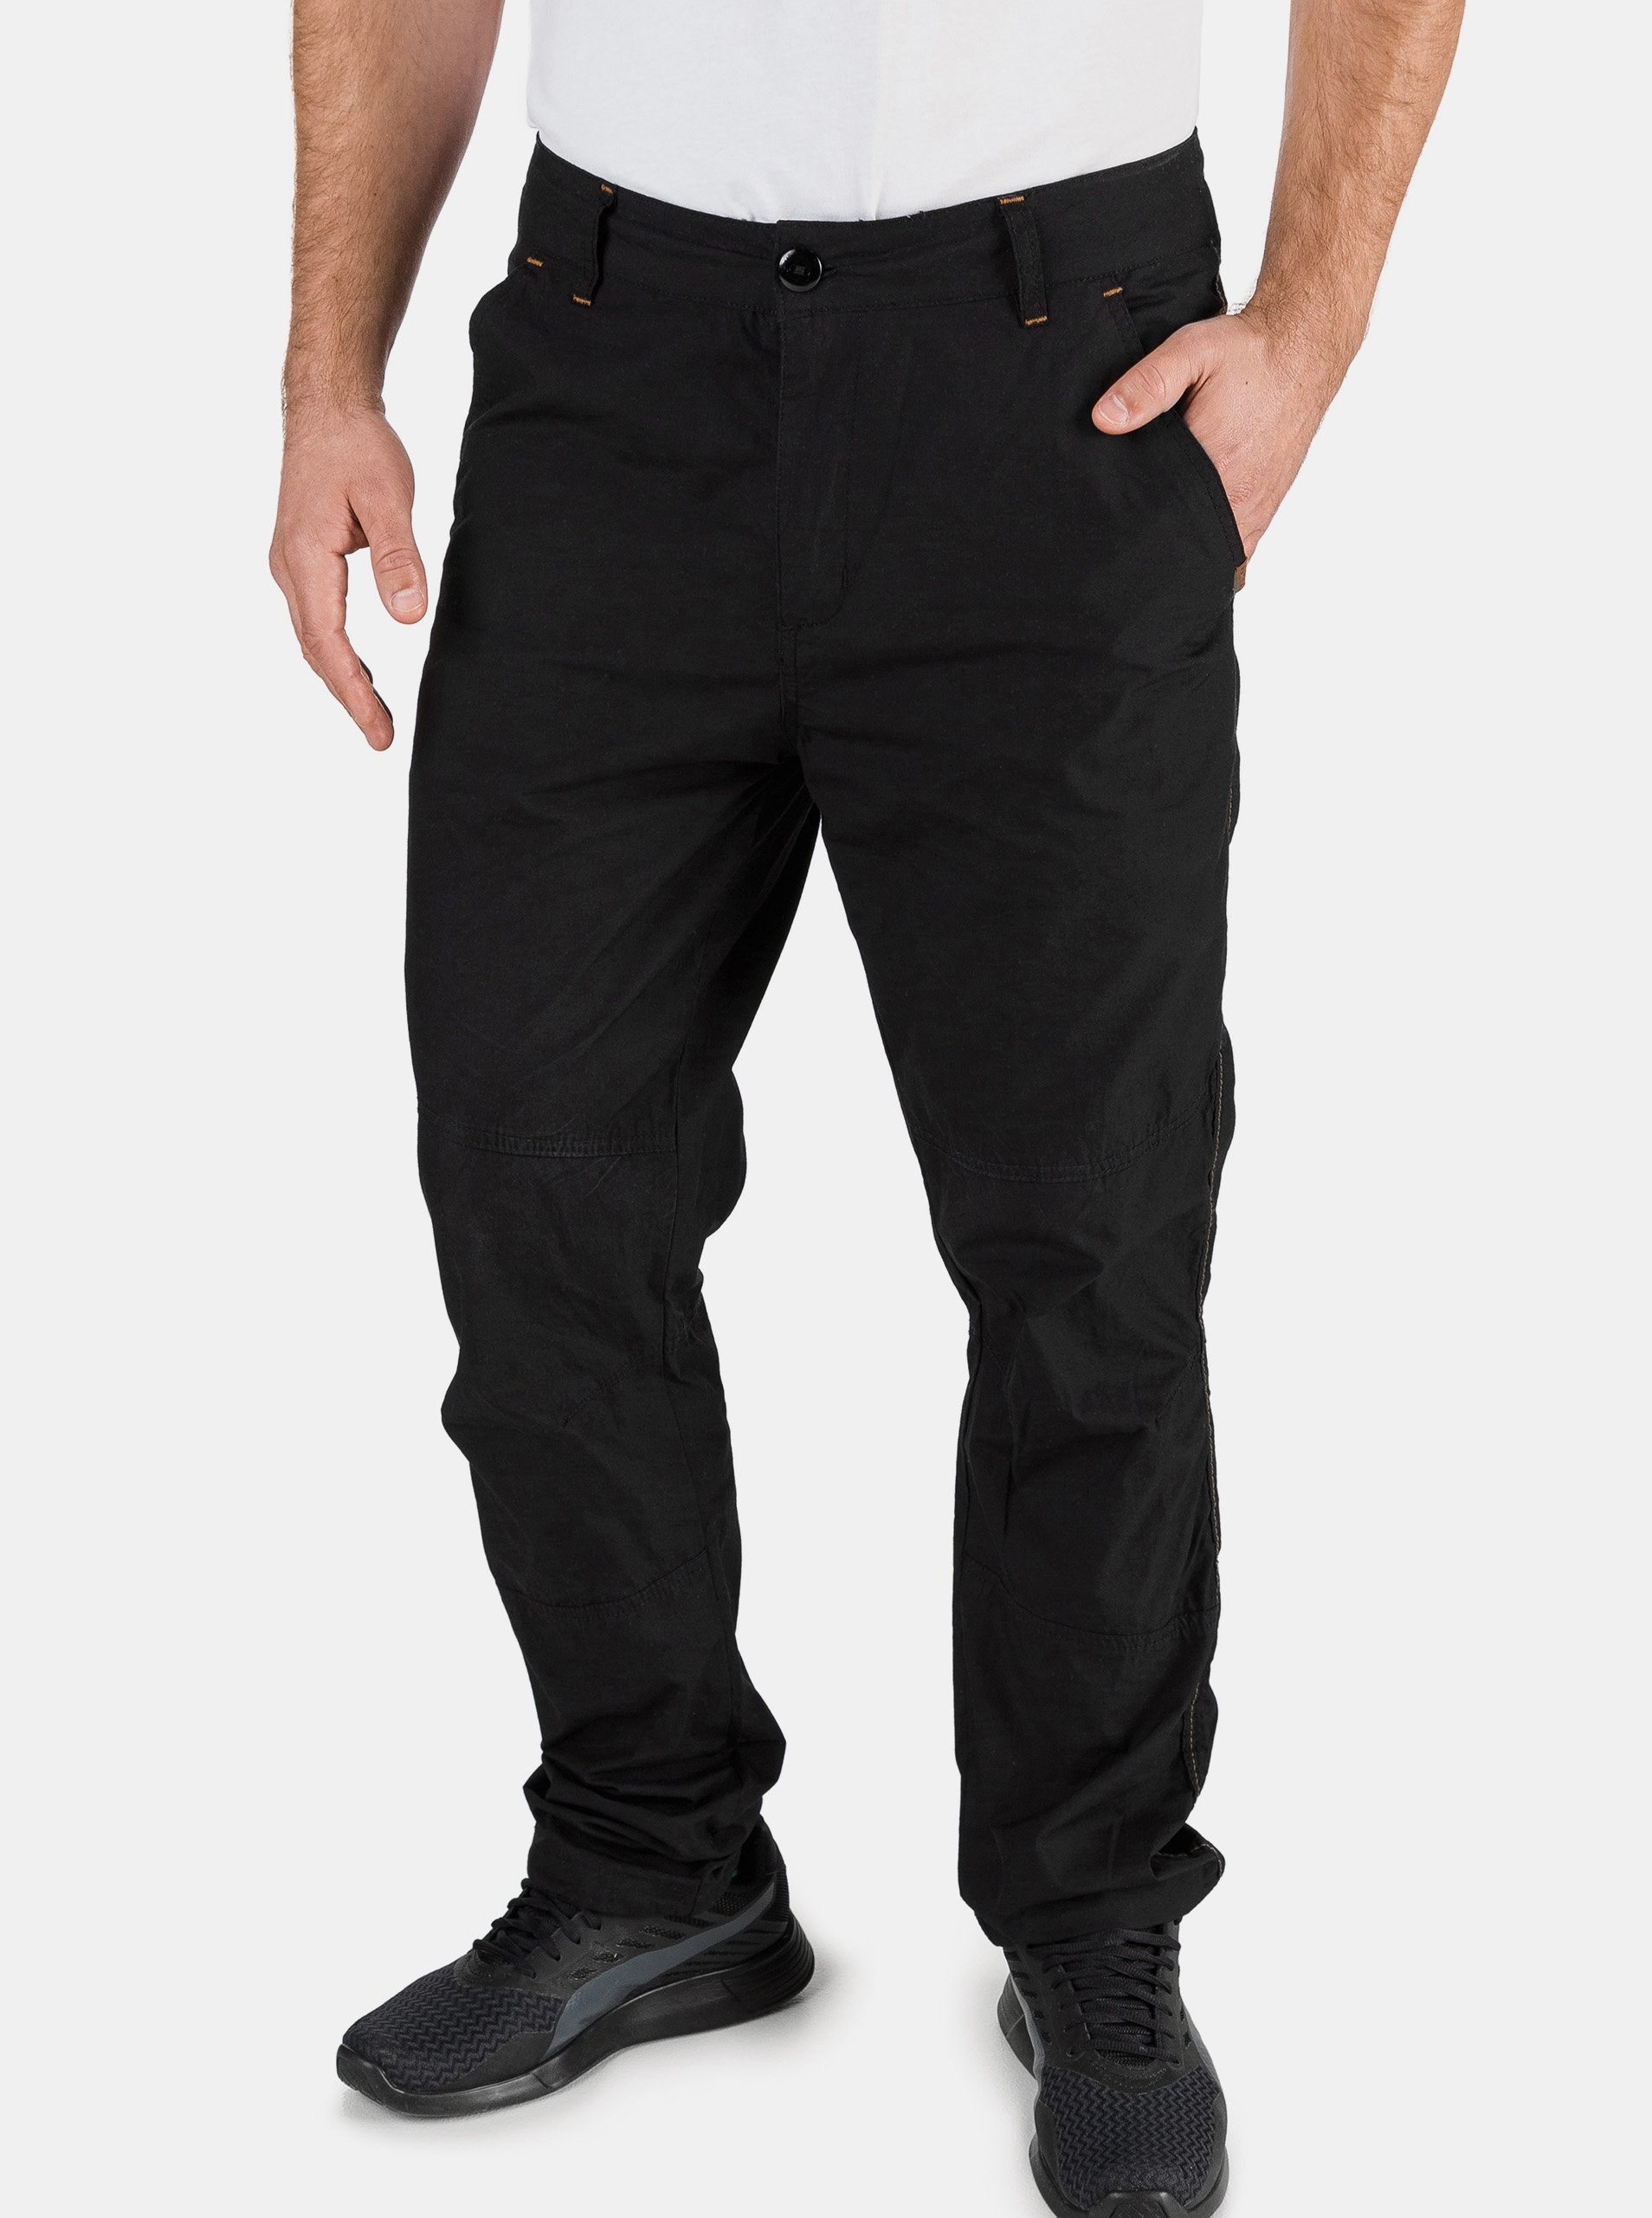 Černé pánské kalhoty SAM 73